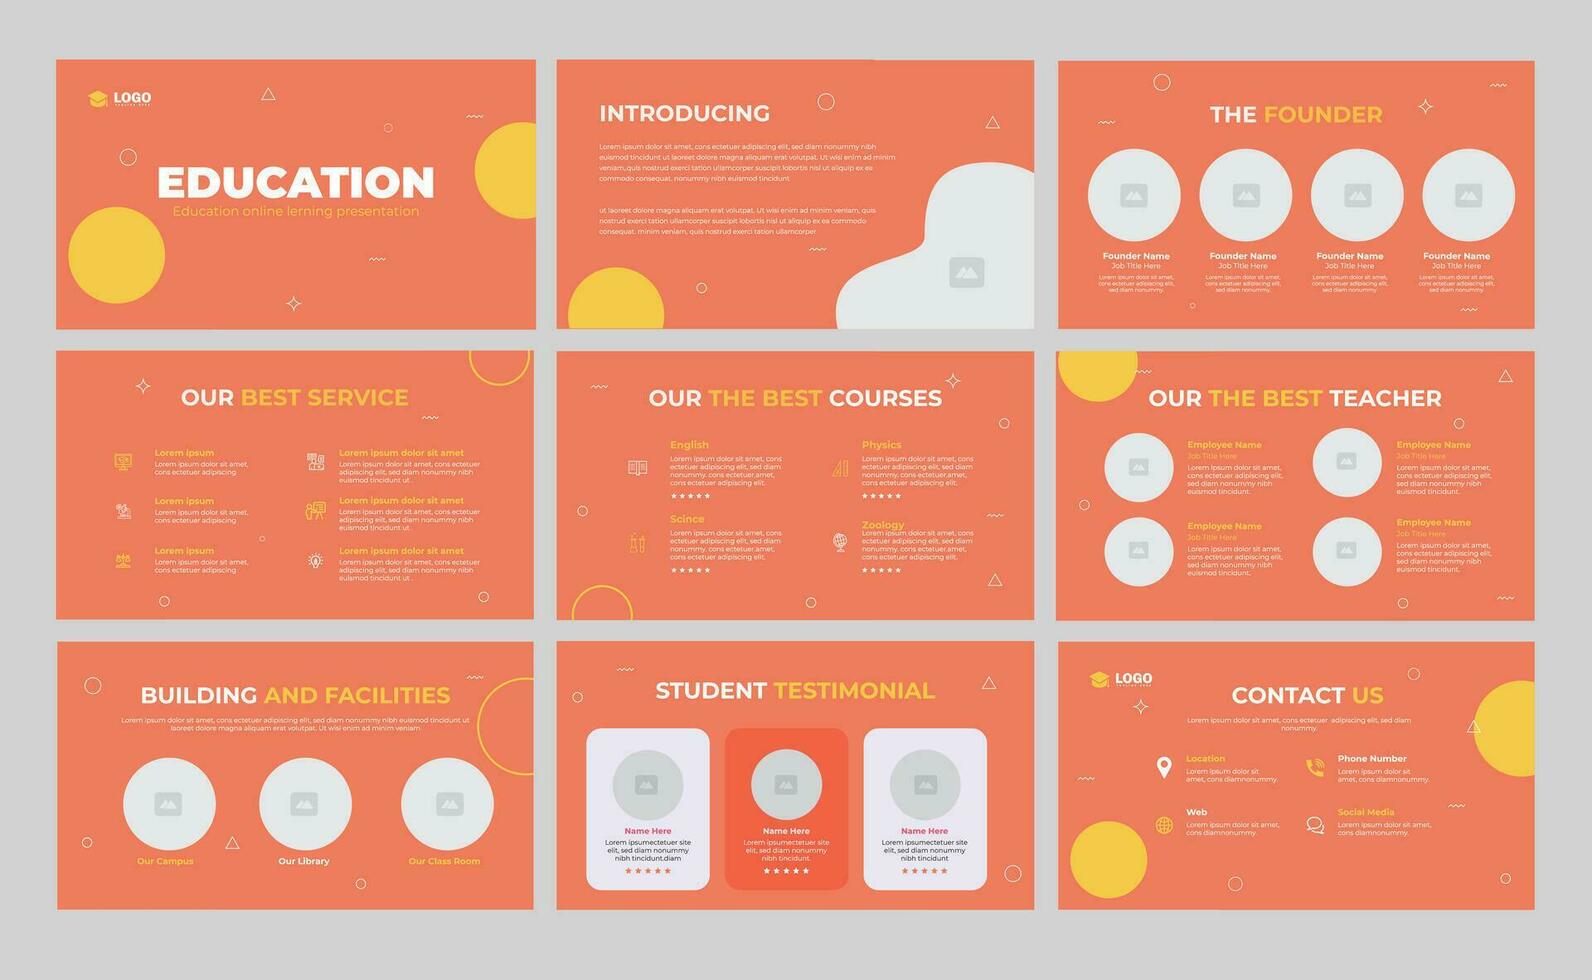 Education Presentation Slide Template and Online Education Slide Design vector